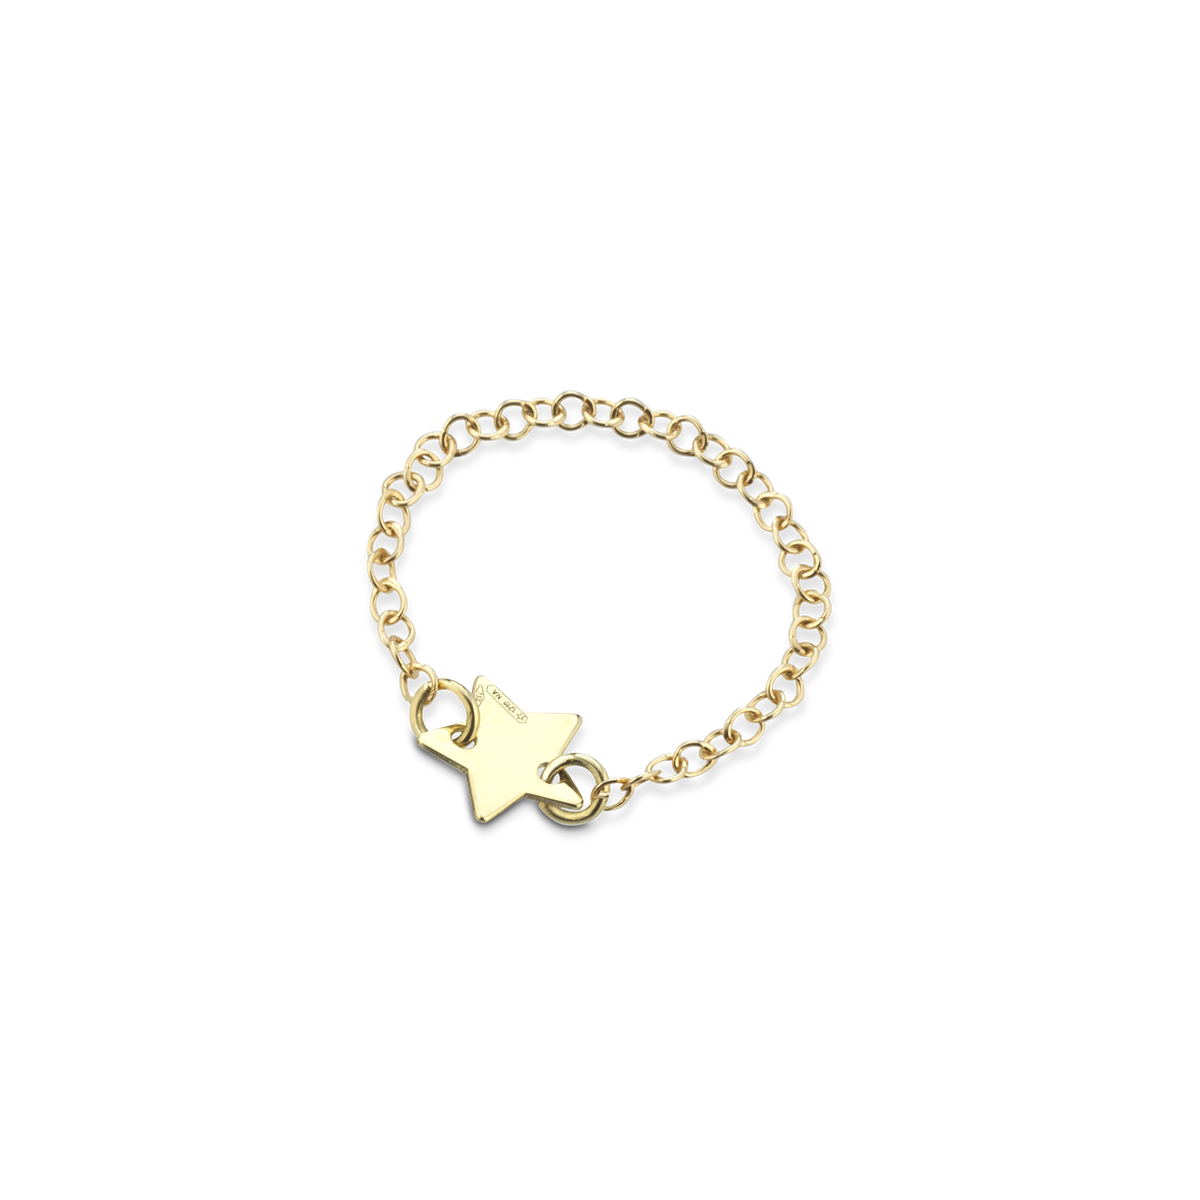 Anello in oro con catena morbida e centrale a forma di stella